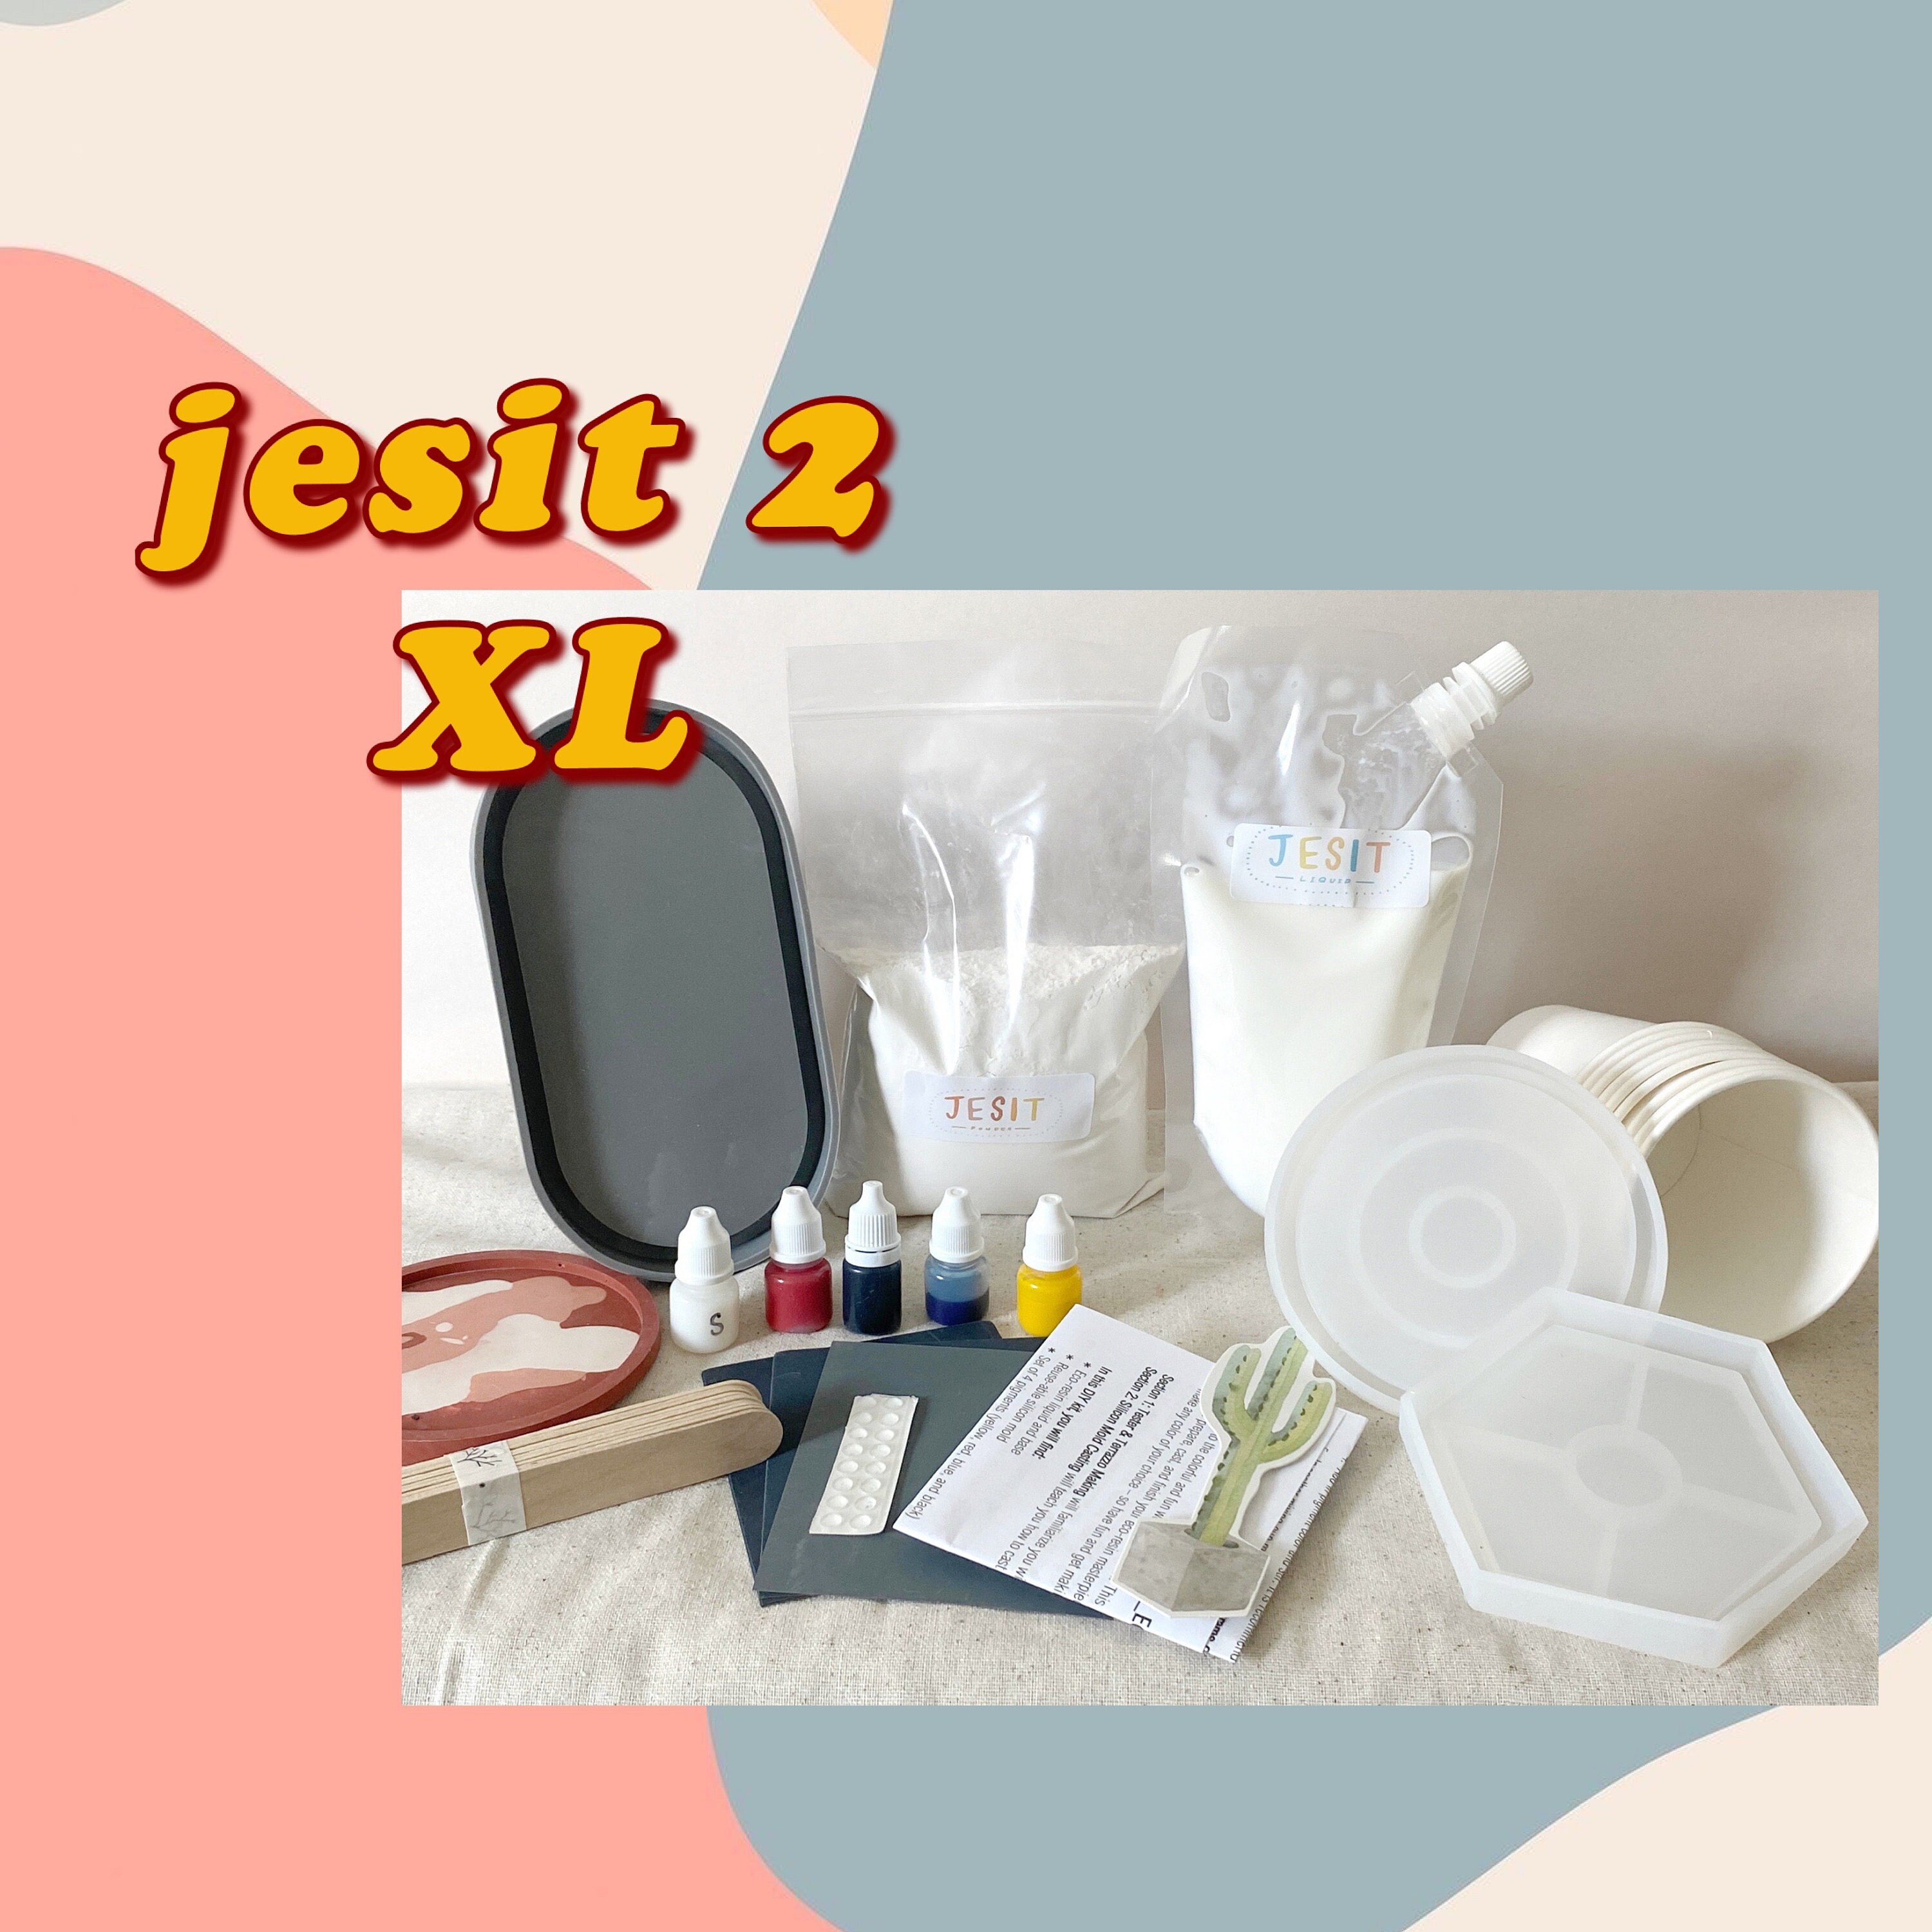 Kit Jesit #2 Xl | Sous-Verres ou Plateaux en Résine de Terrazzo Jesmonite